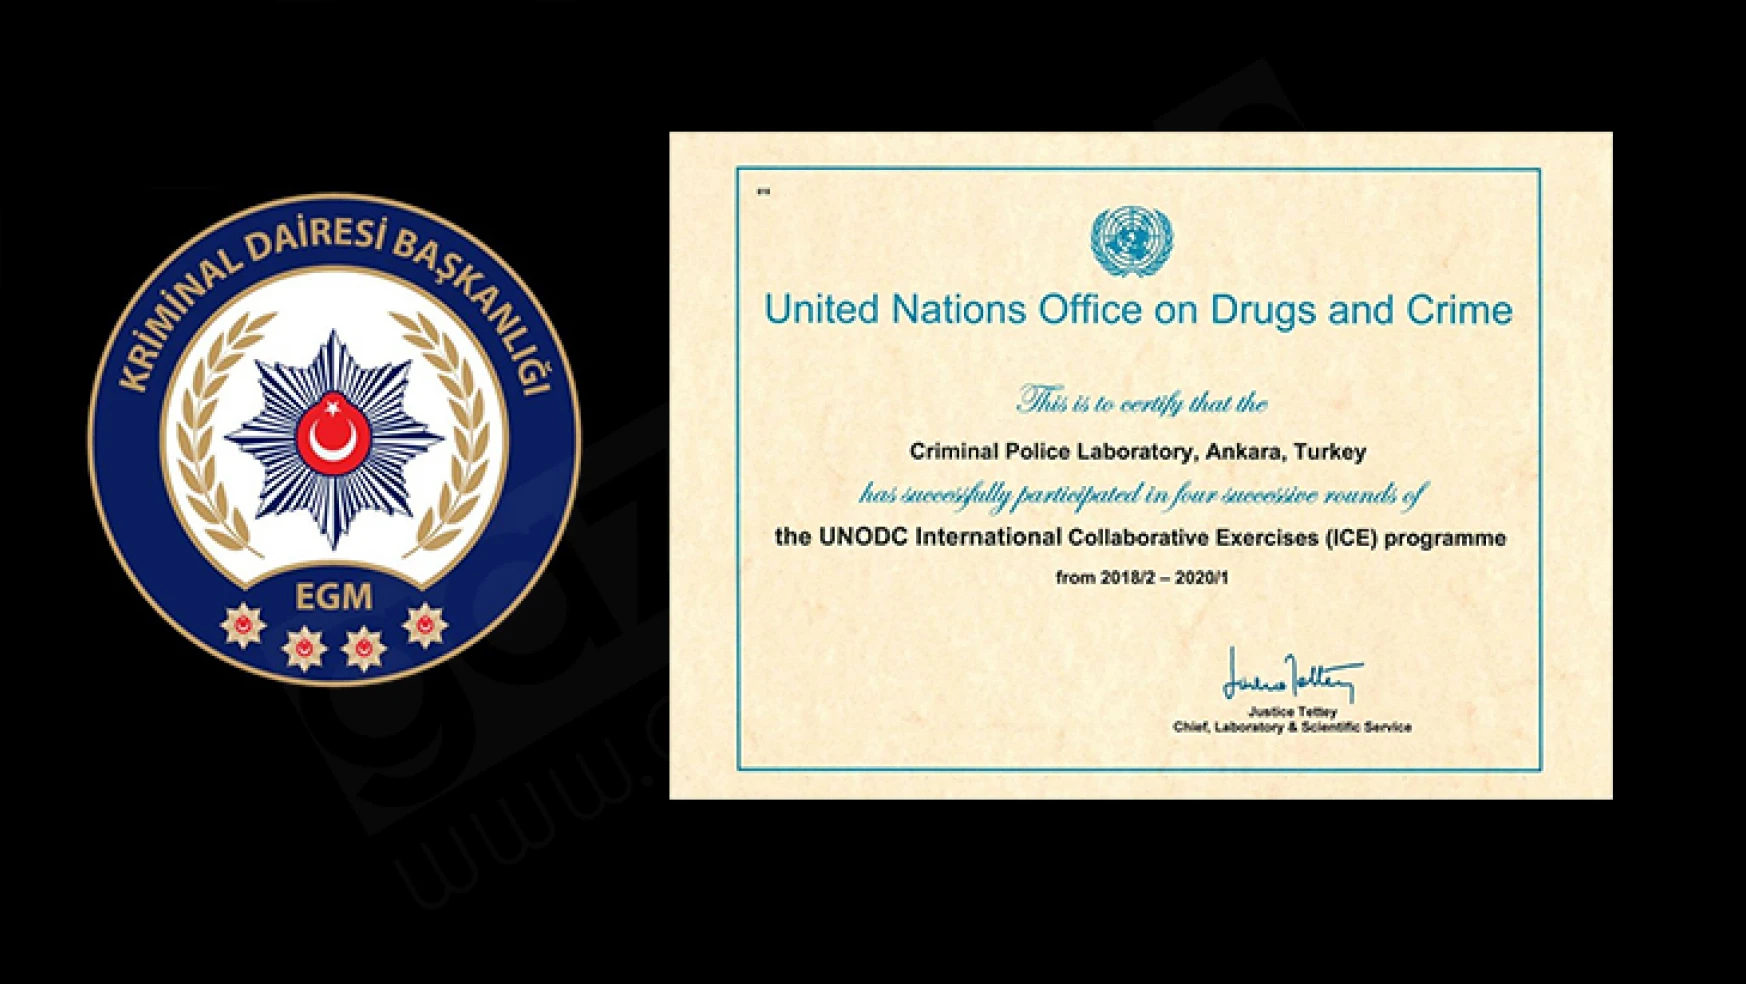 UNODC, Kriminal Daire Başkanlığı'na teşekkür belgesi verdi